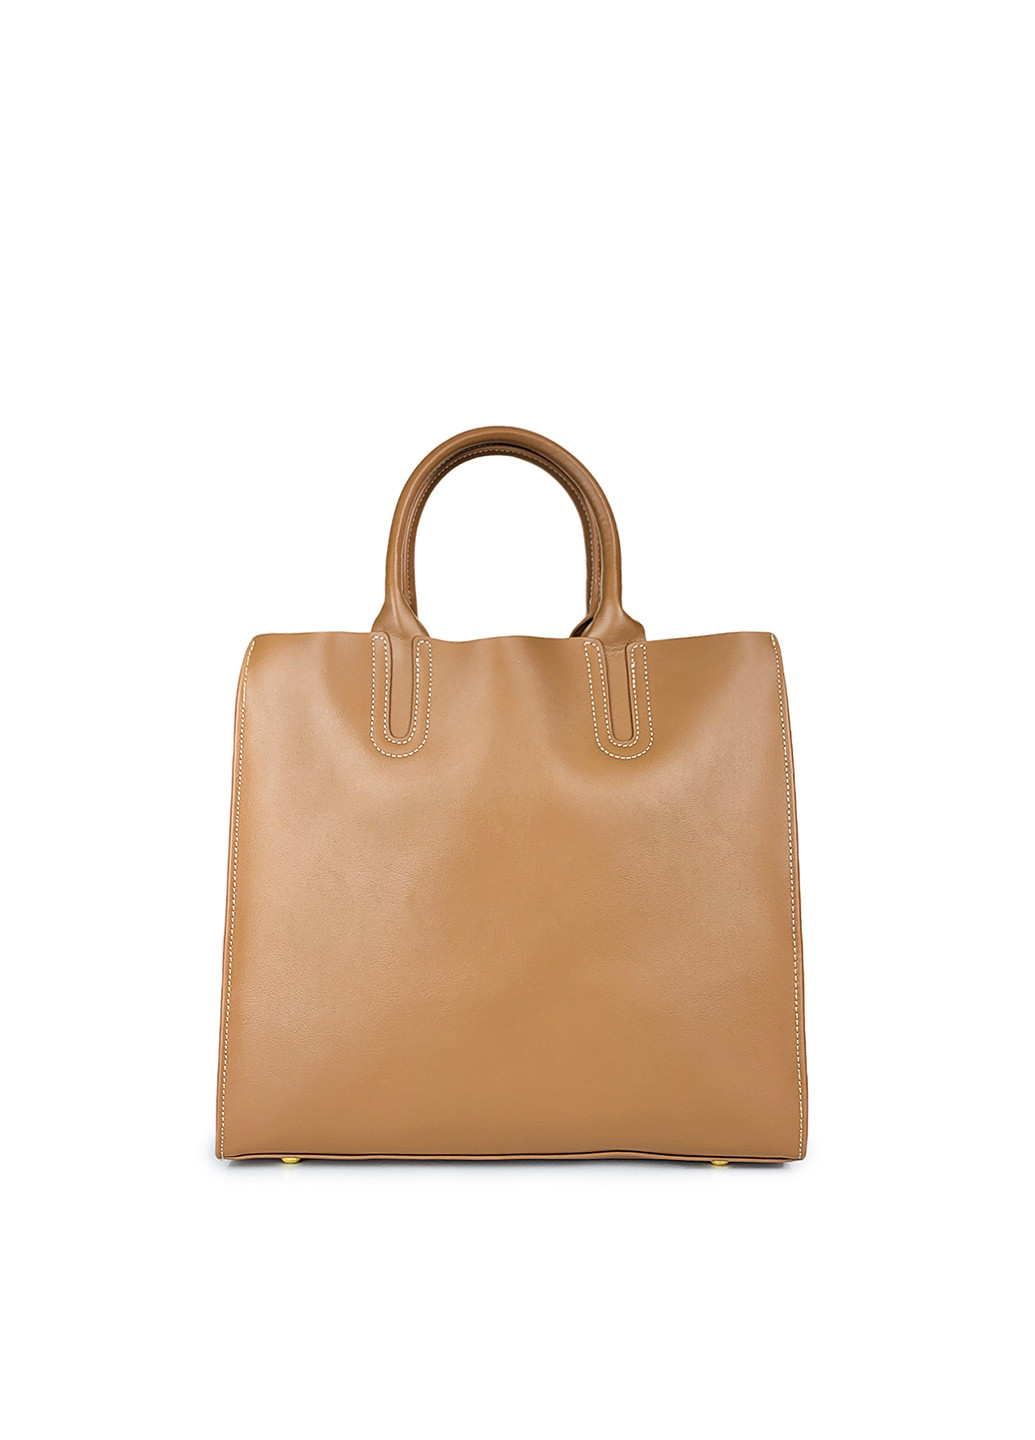 Женская кожаная коричневая сумочка большая, 9921 кор, Fashion (268120703)